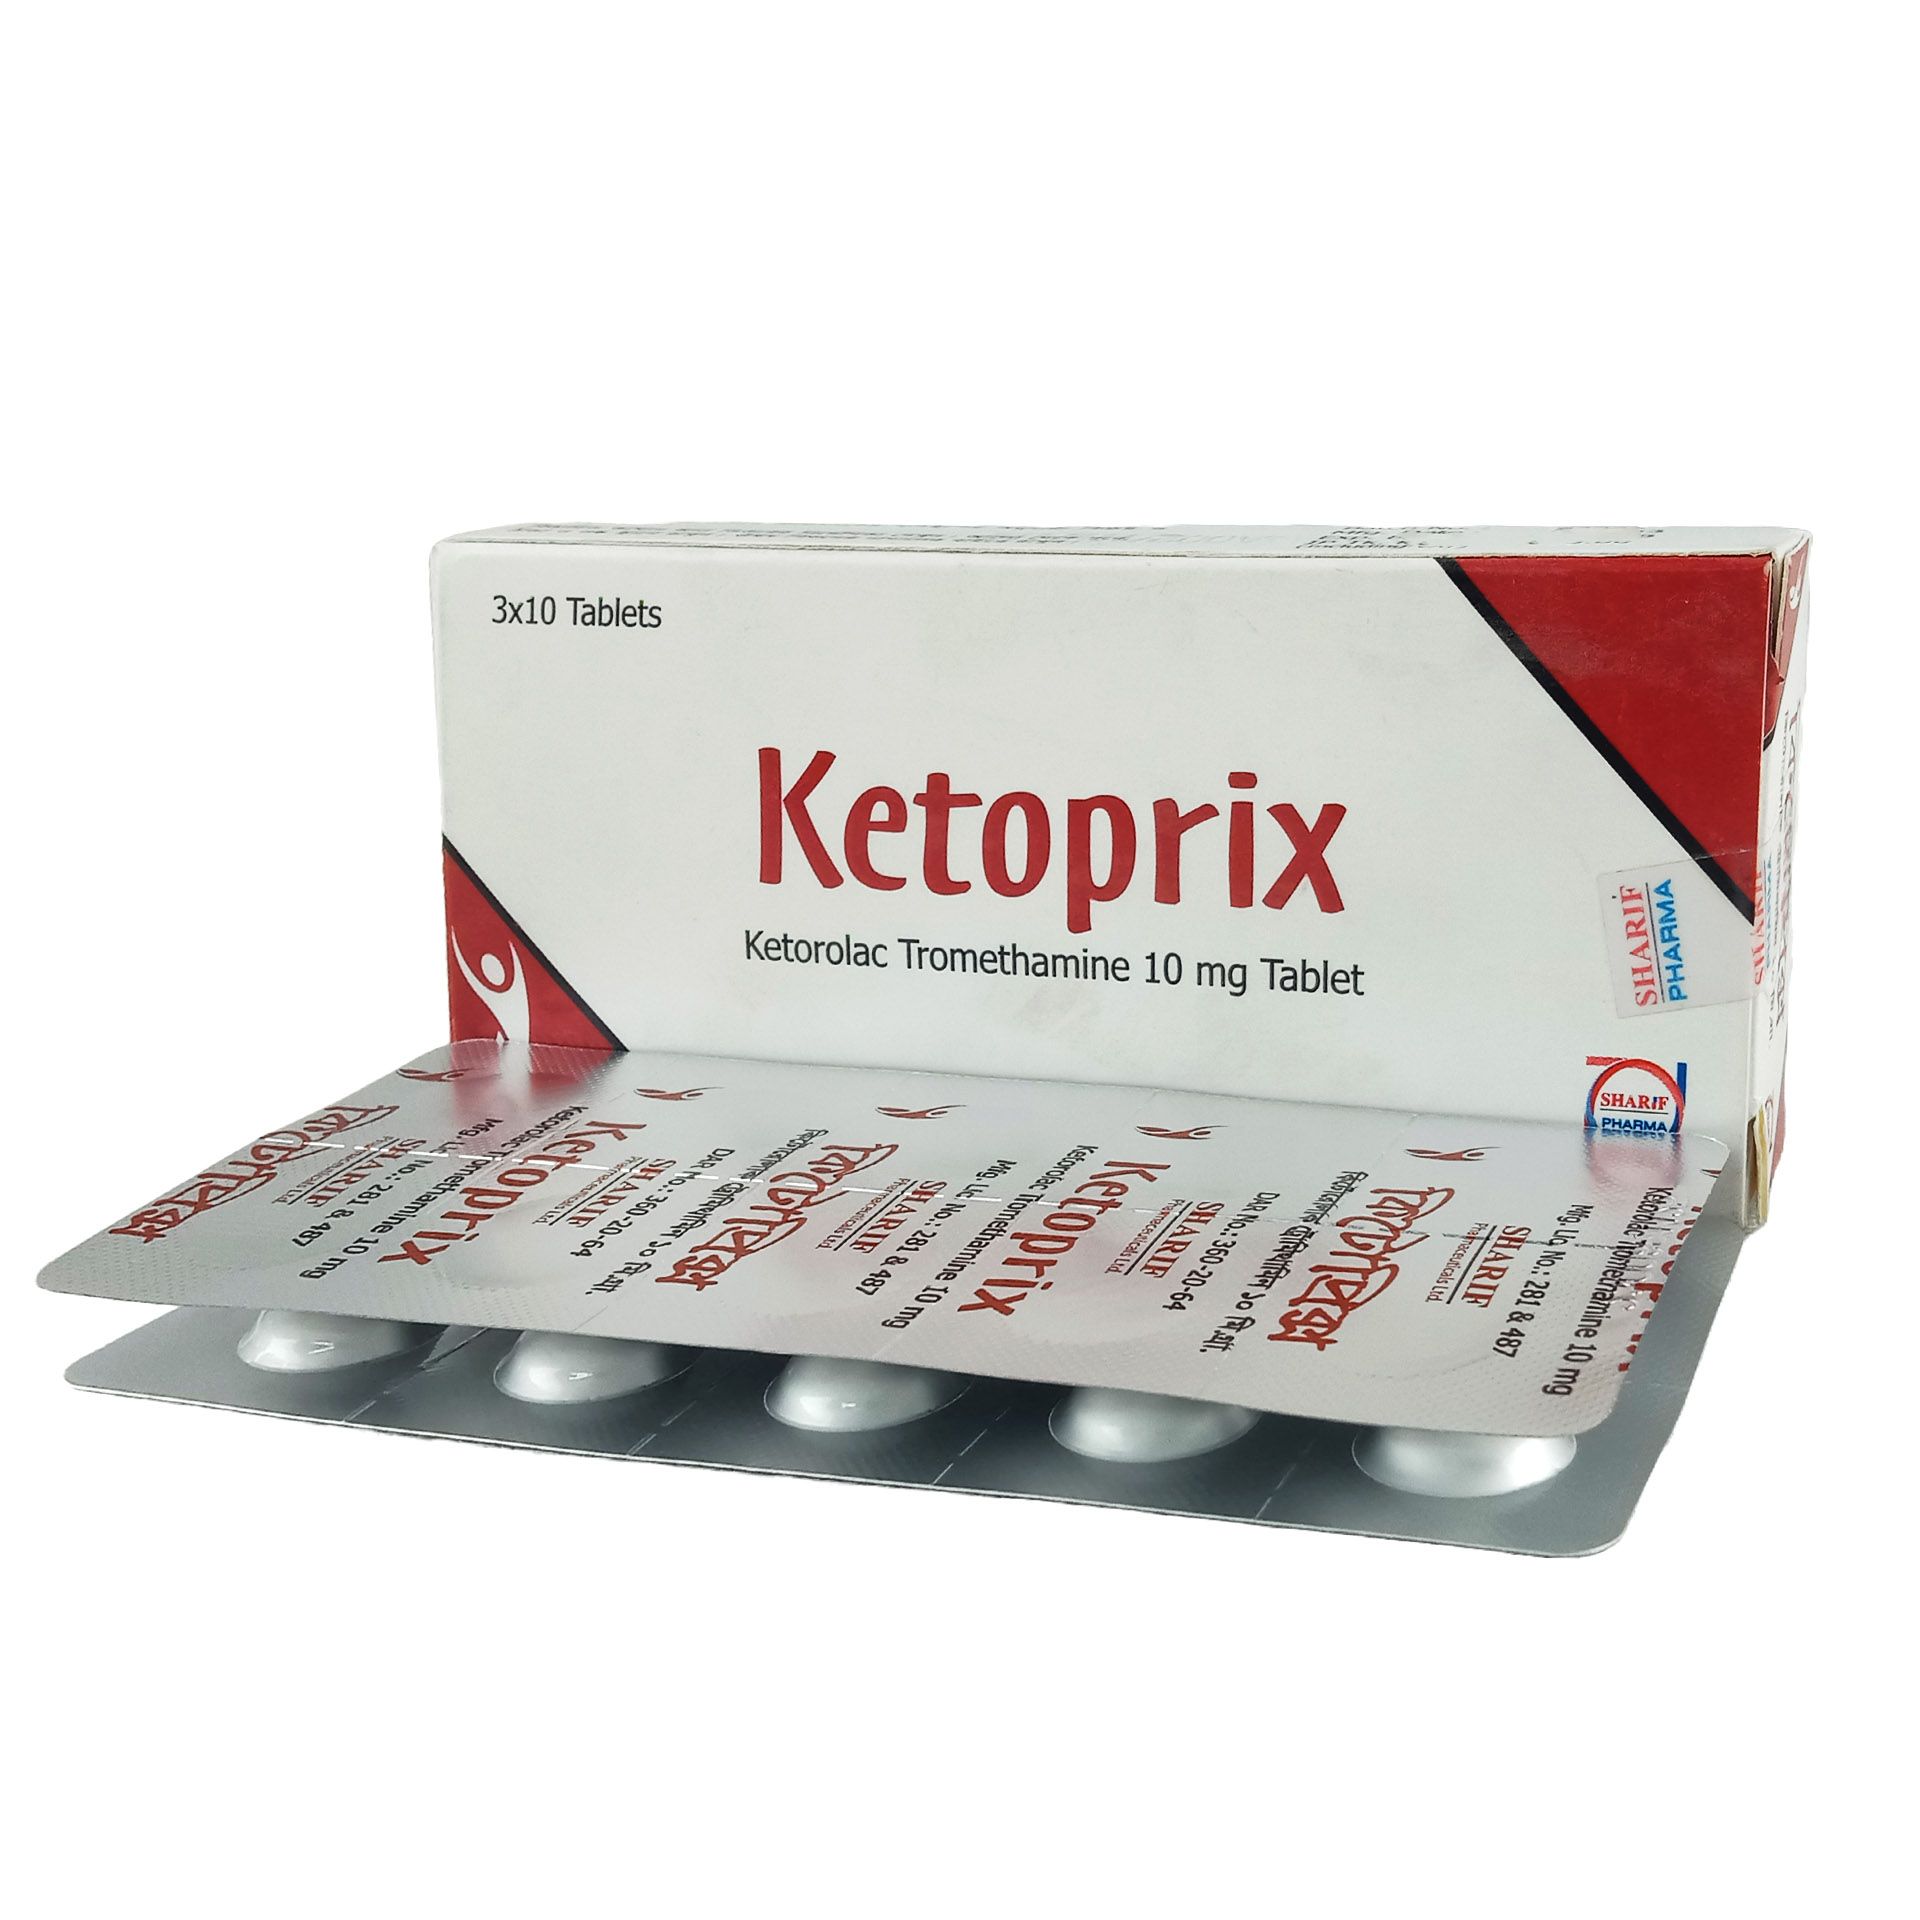 Ketoprix 10mg Tablet